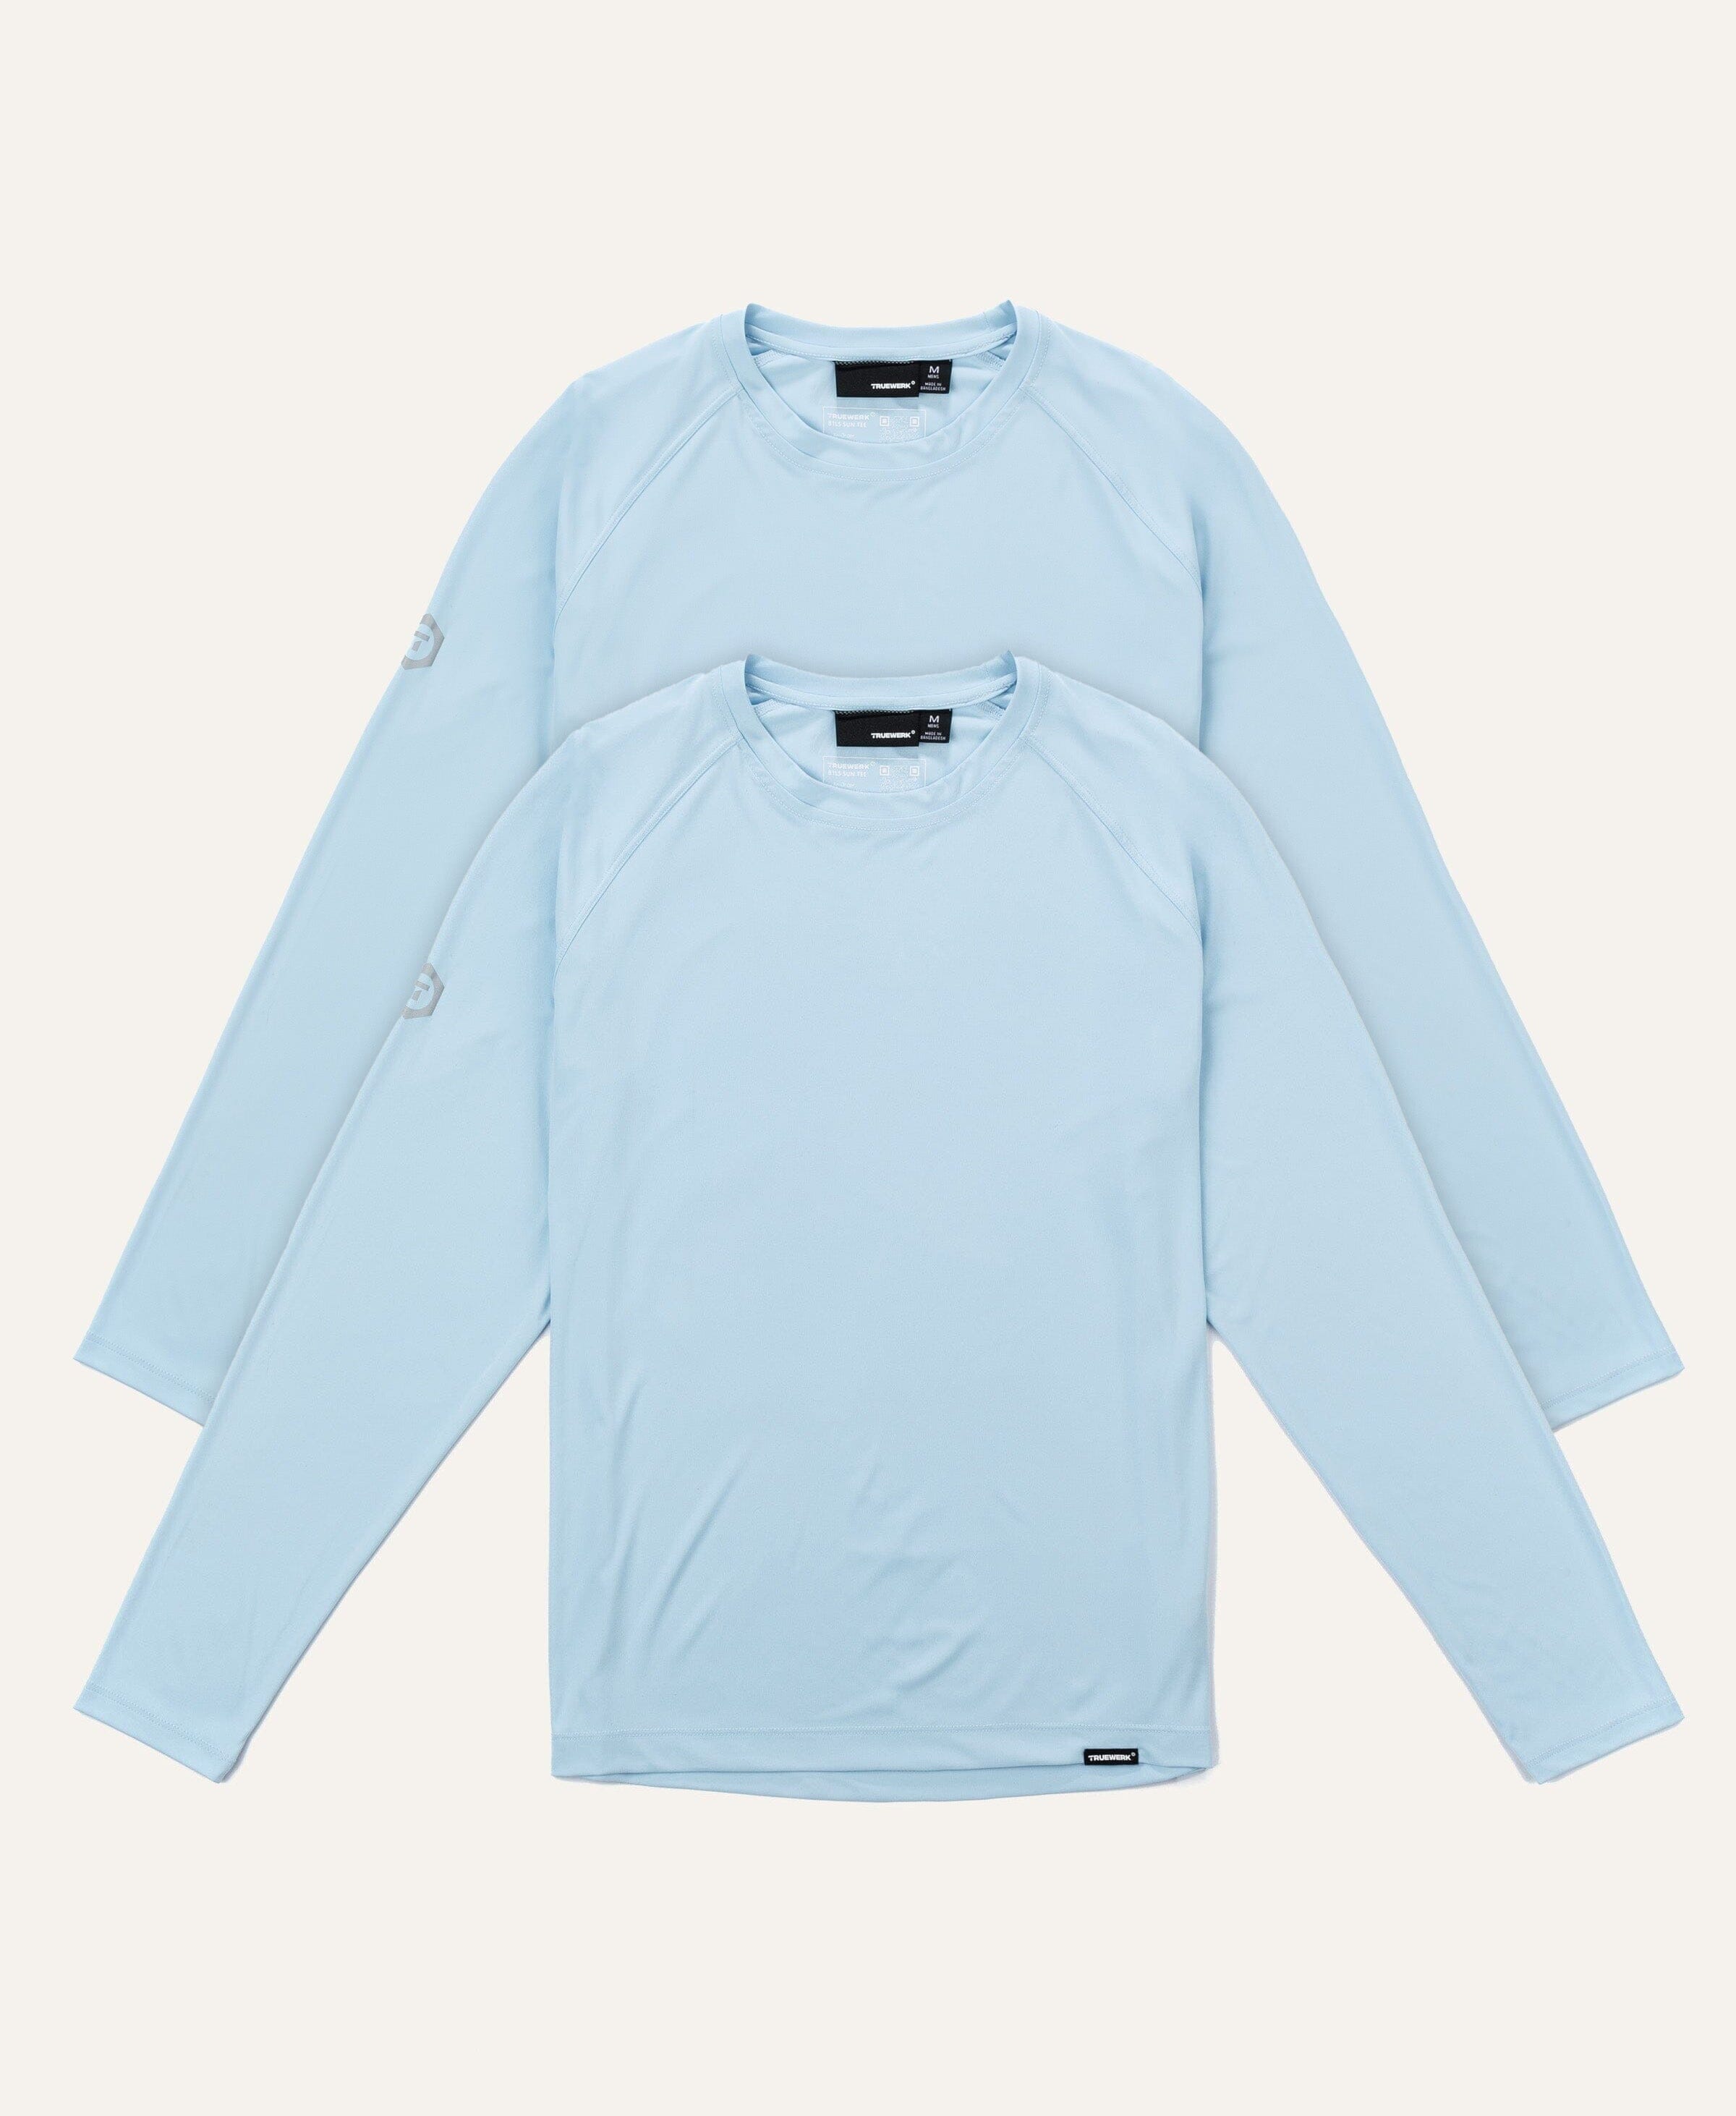 B1 Long Sleeve - 2 Pack | Shirts